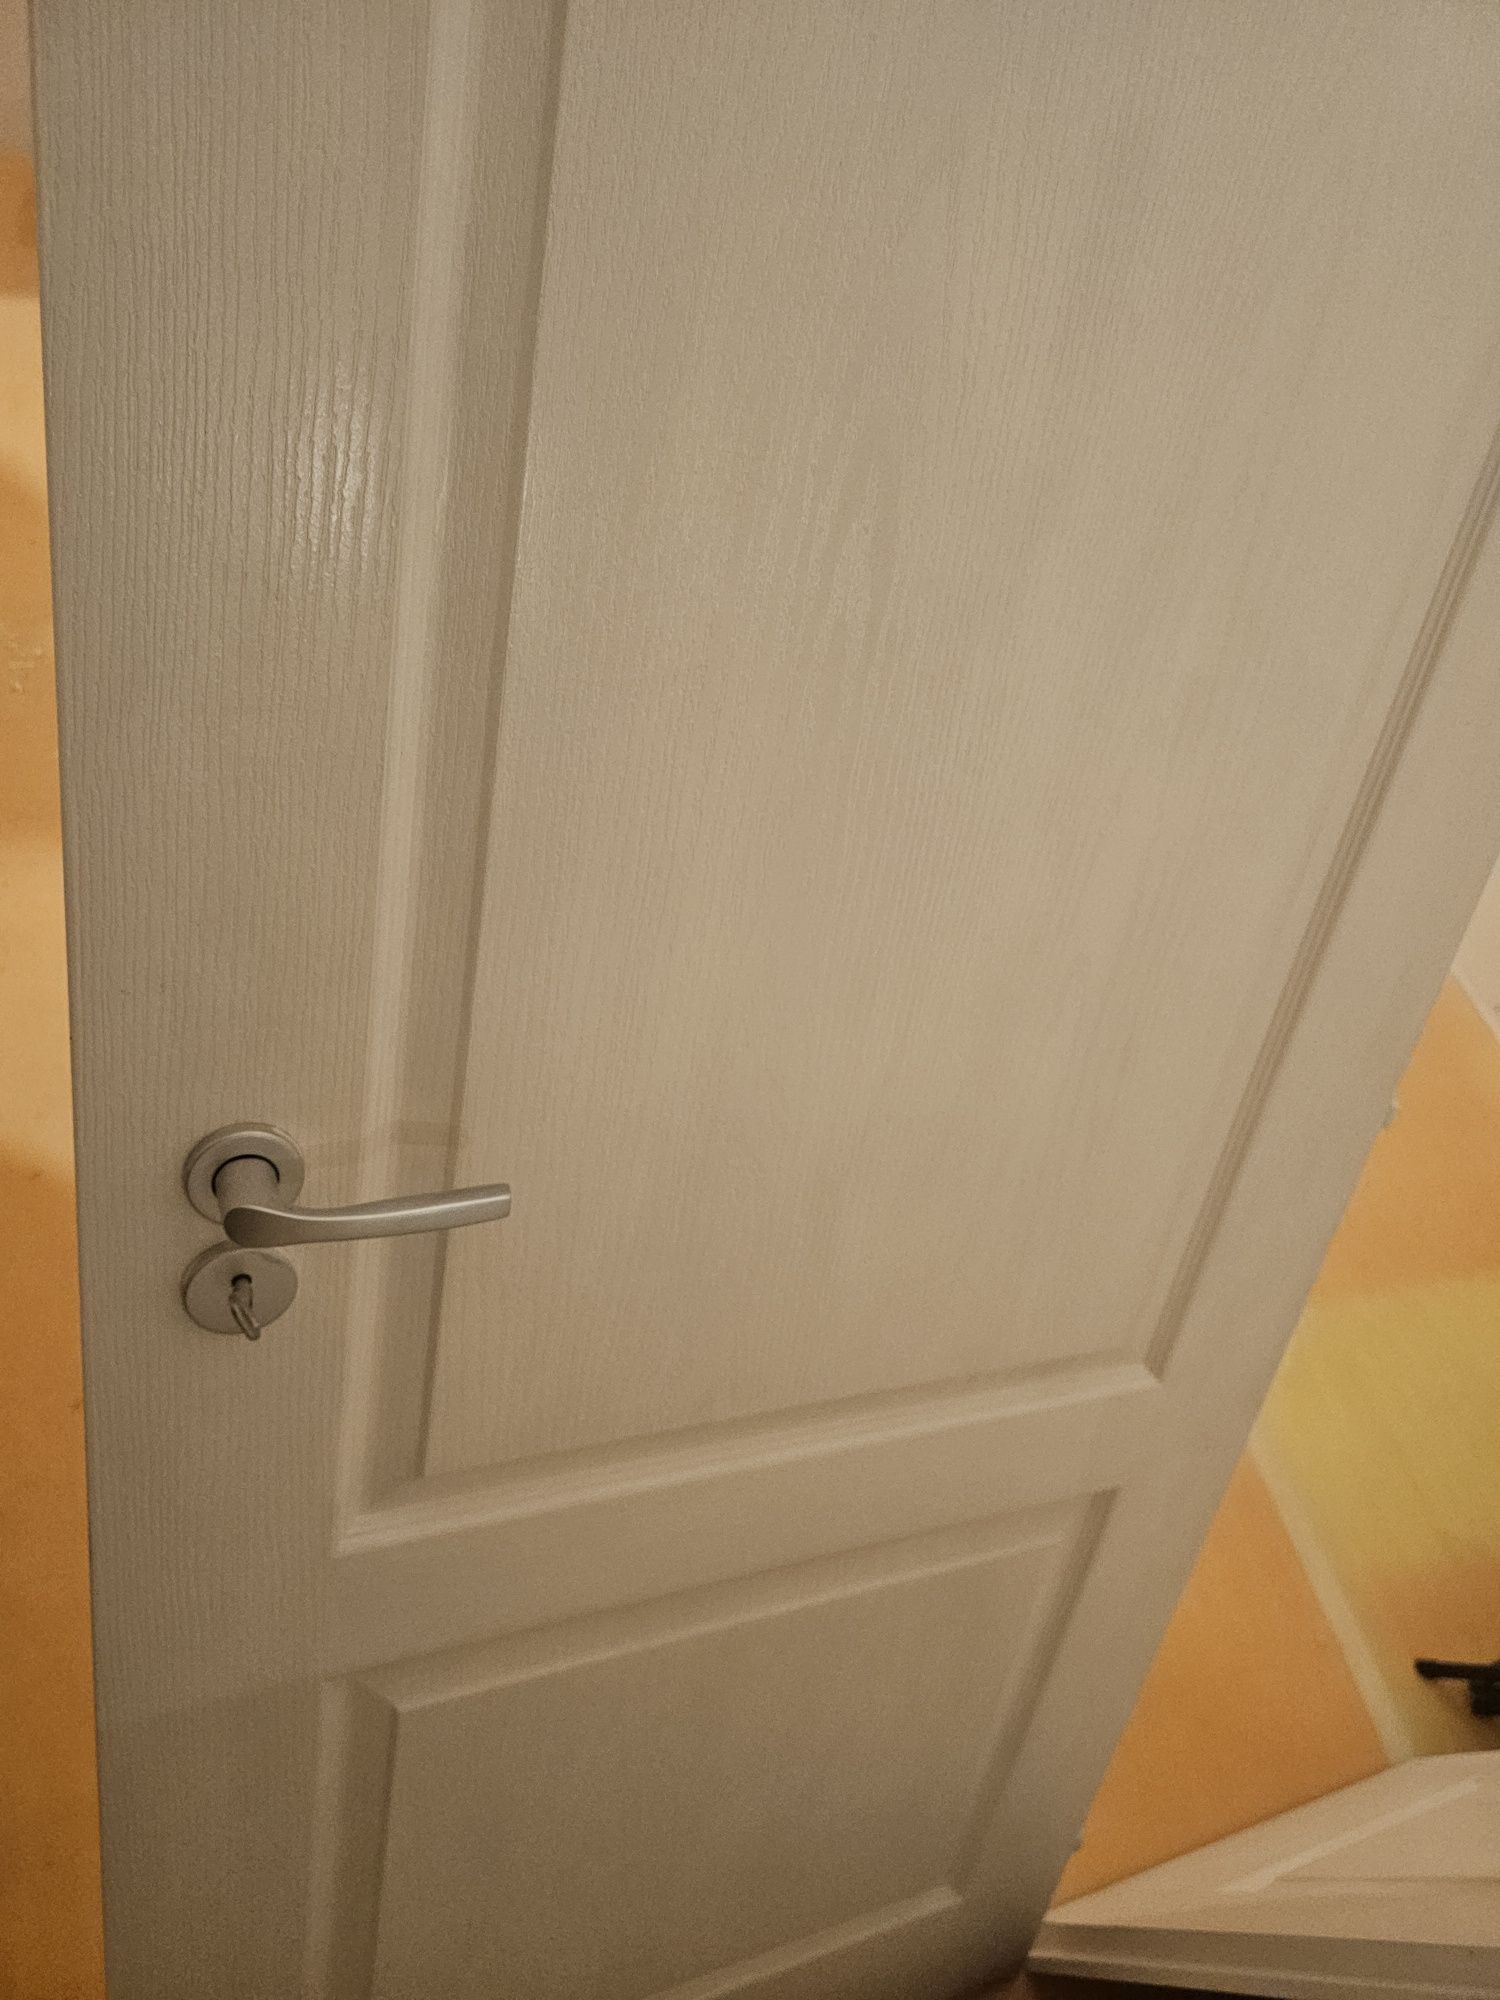 Pachet Foi de ușa albe de 60 și 80 cm